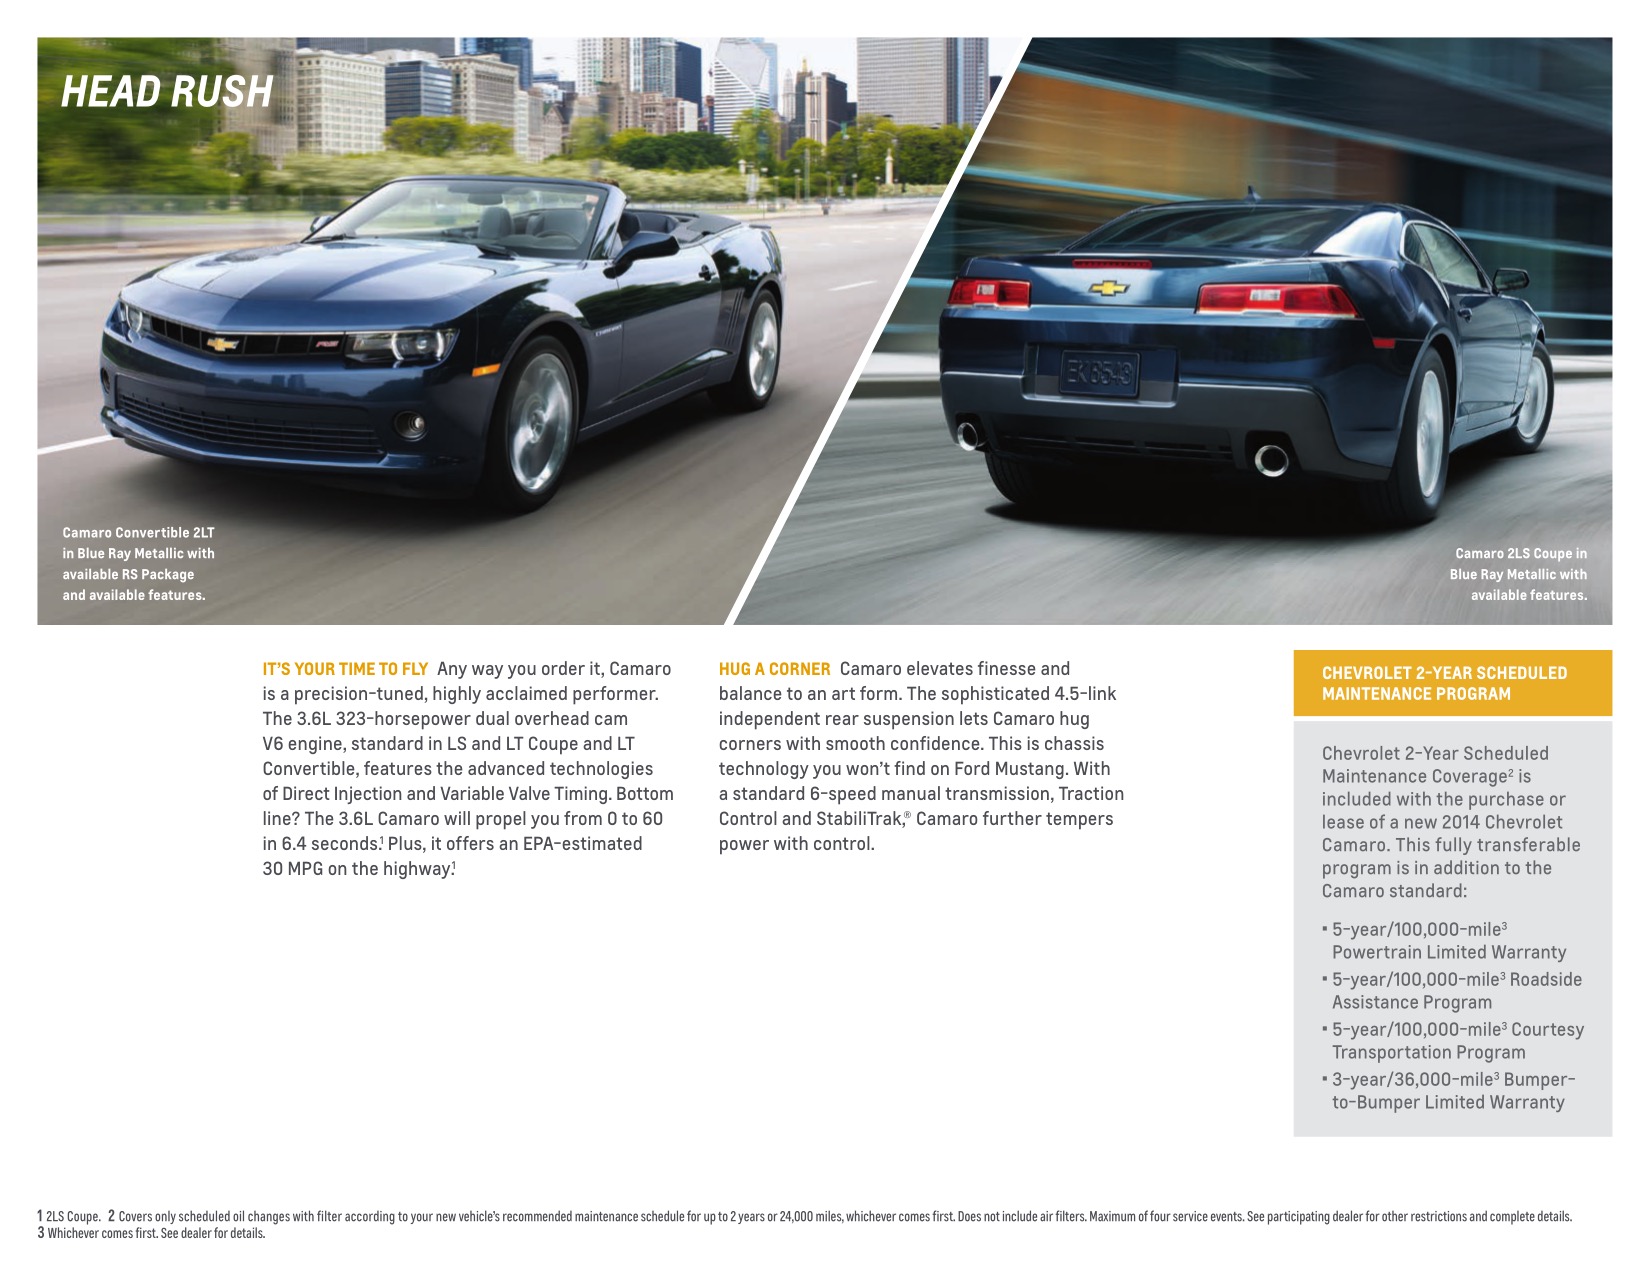 2014 Chev Camaro Brochure Page 15